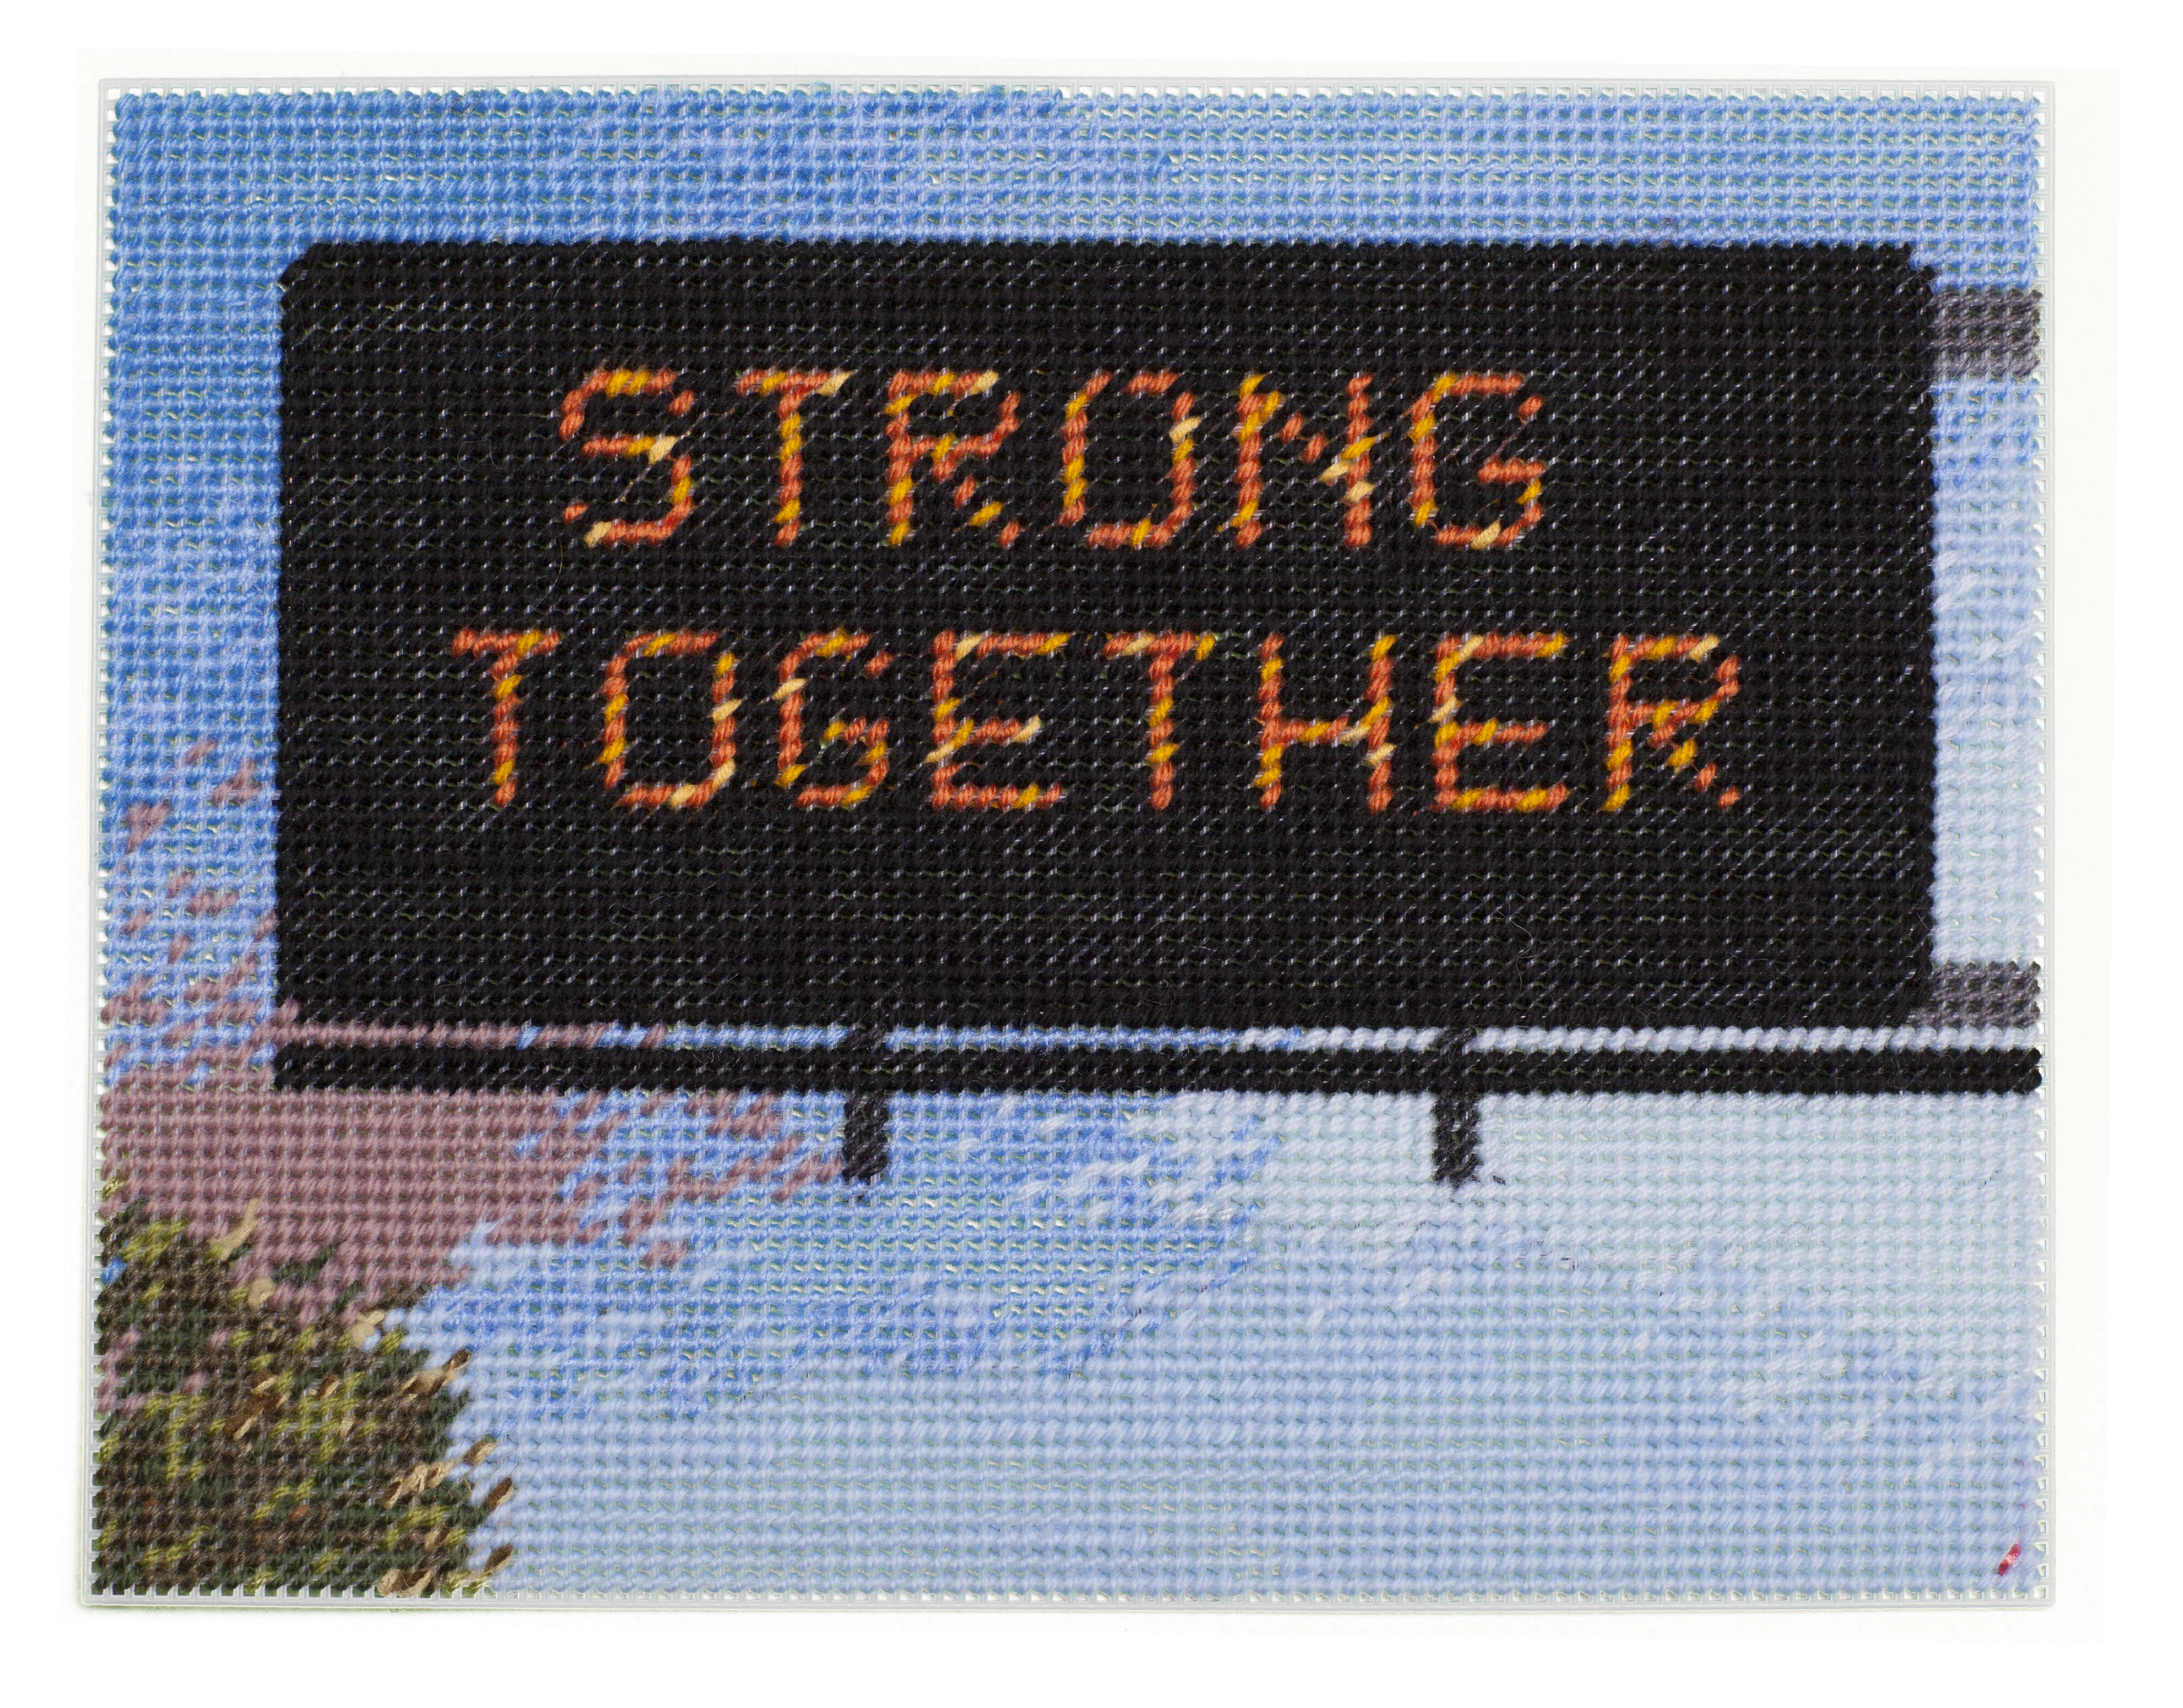 Michelle Hamer, Strong Together, 2021